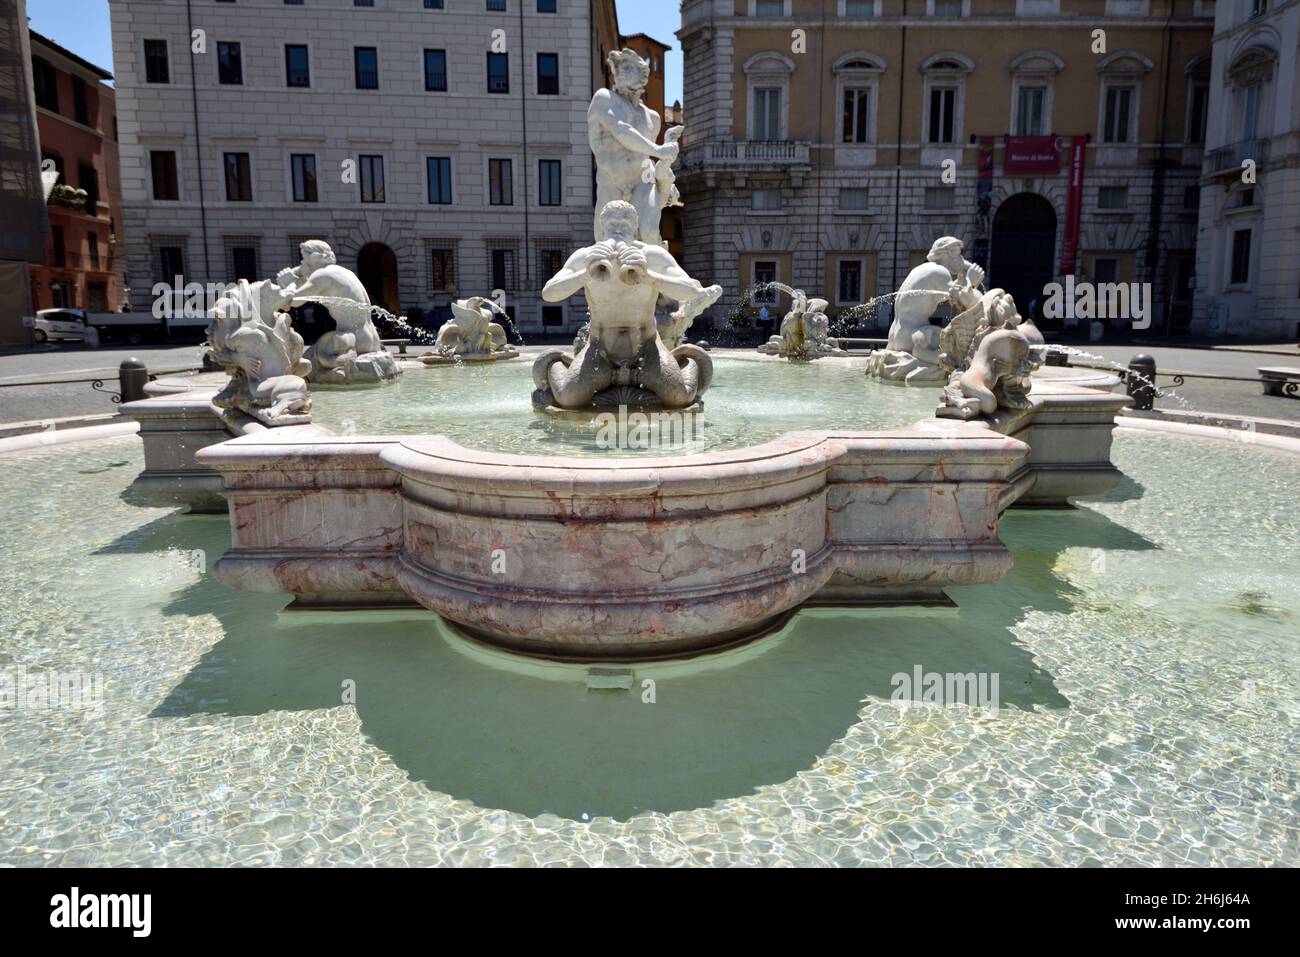 Italia, Roma, Piazza Navona, Fontana del Moro Foto de stock